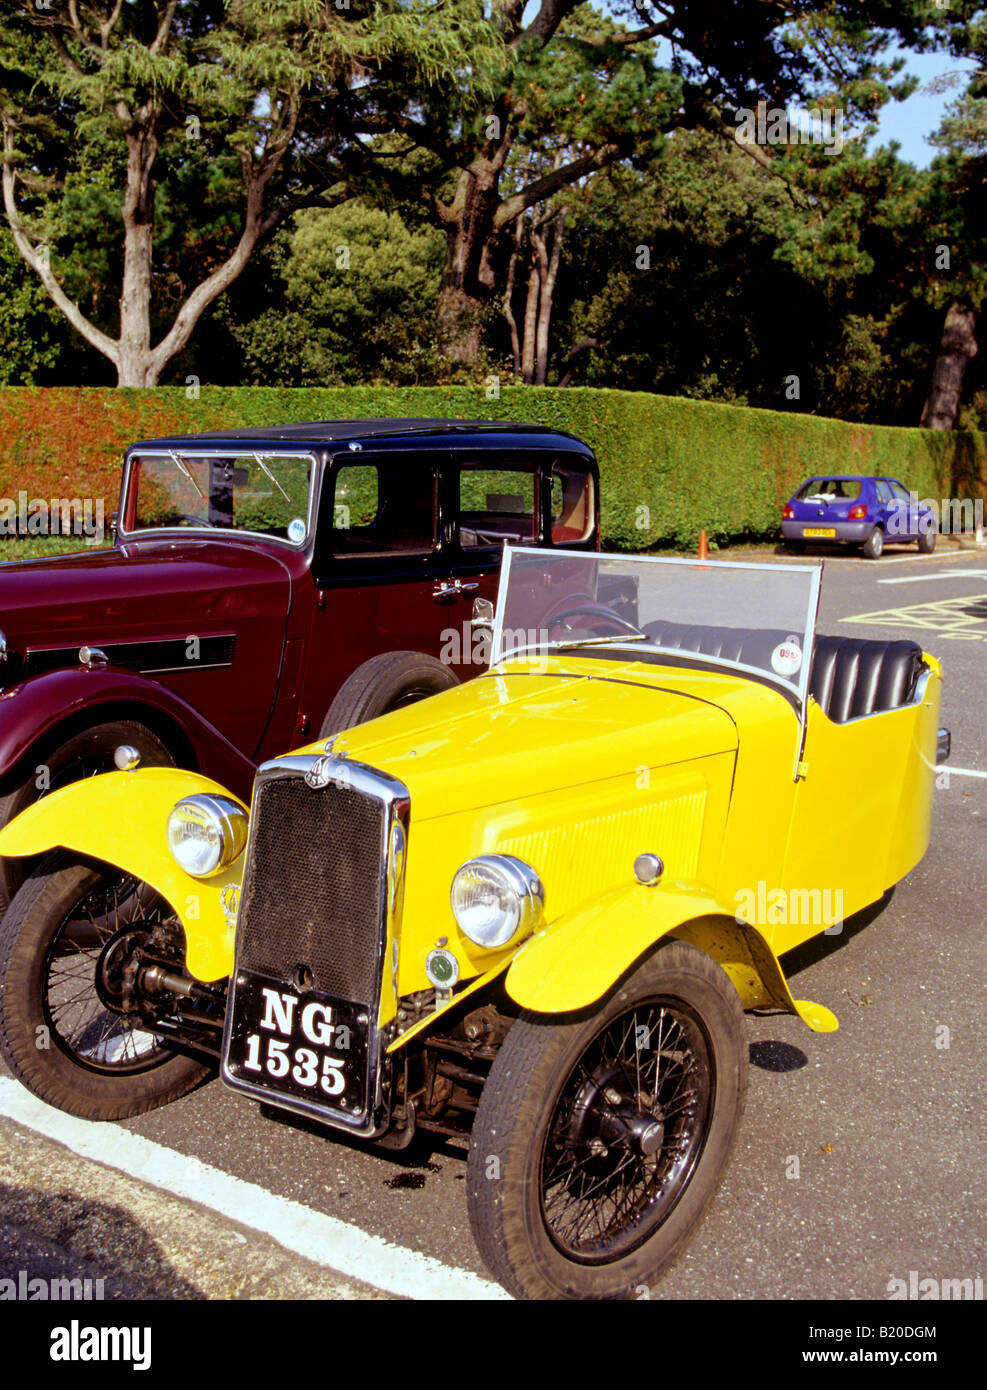 0781 Vintage BSA car England Stock Photo